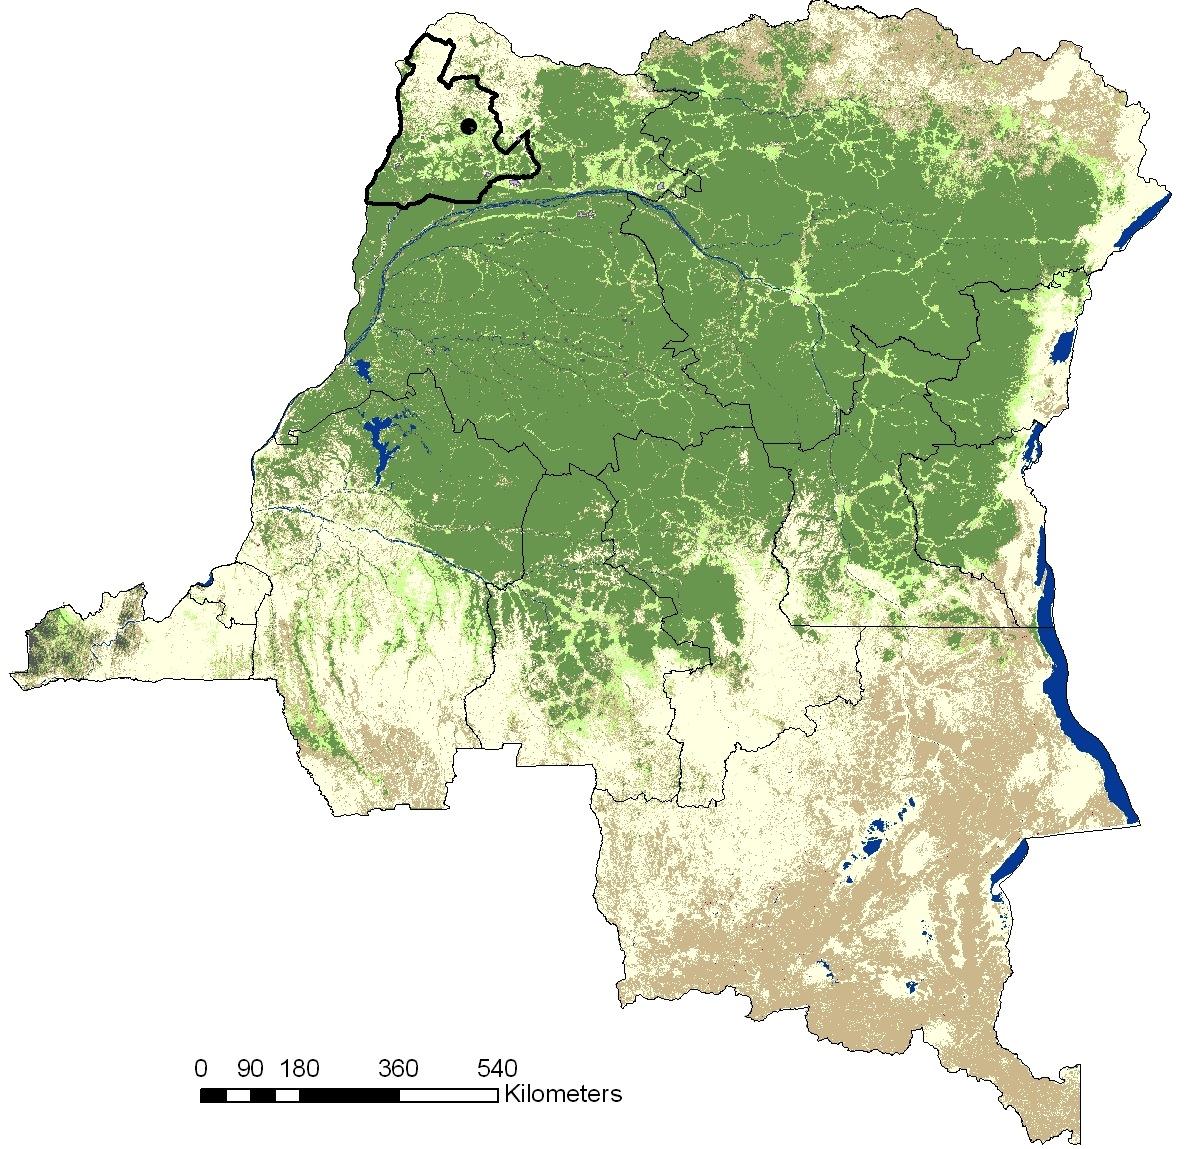 Soutenir la croissance verte en République démocratique du Congo Objectifs: Soutenir la